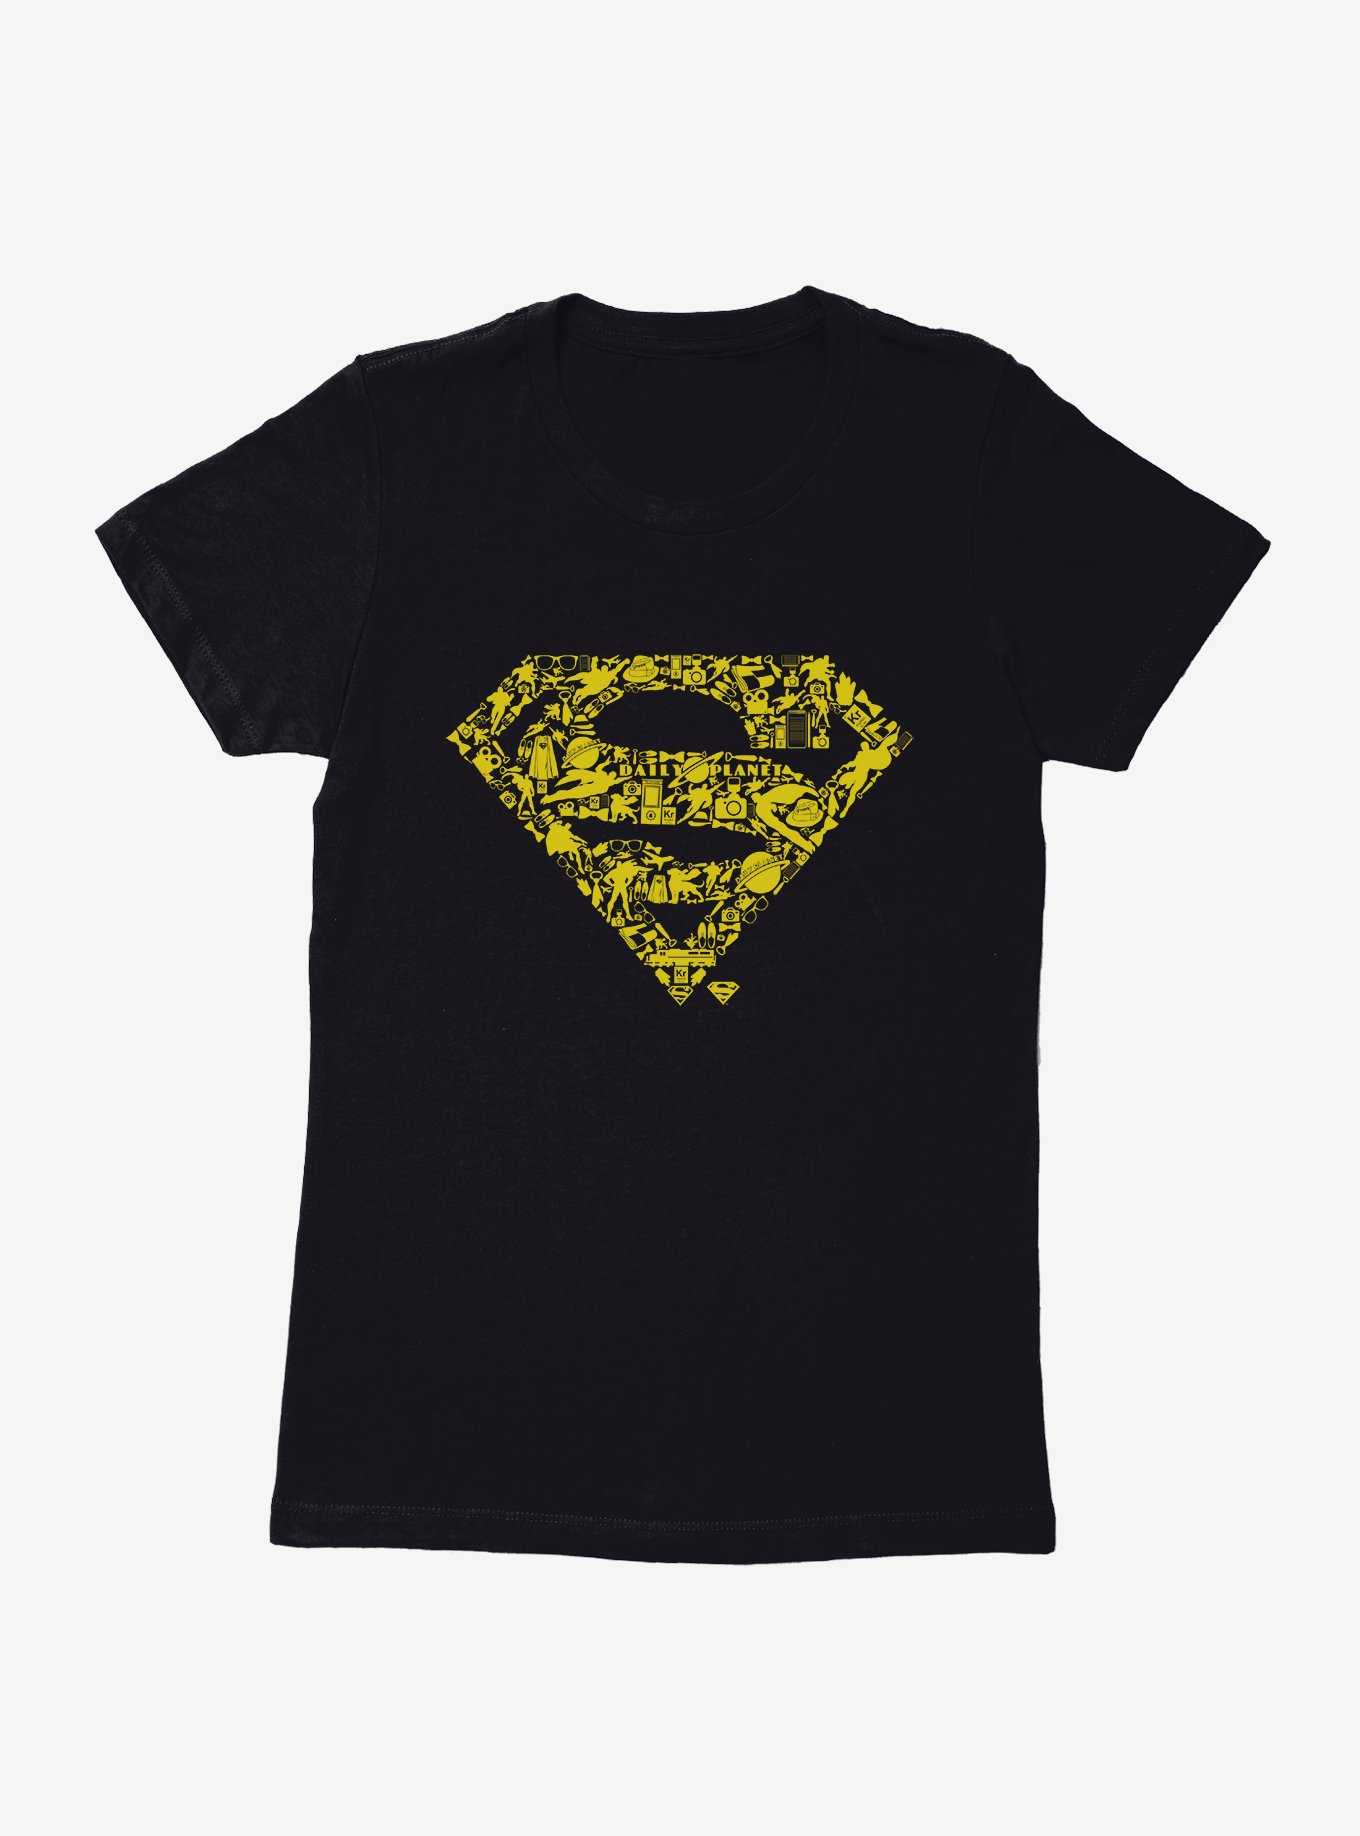 DC Comics Justice League Superman Icons Womens T-Shirt, , hi-res